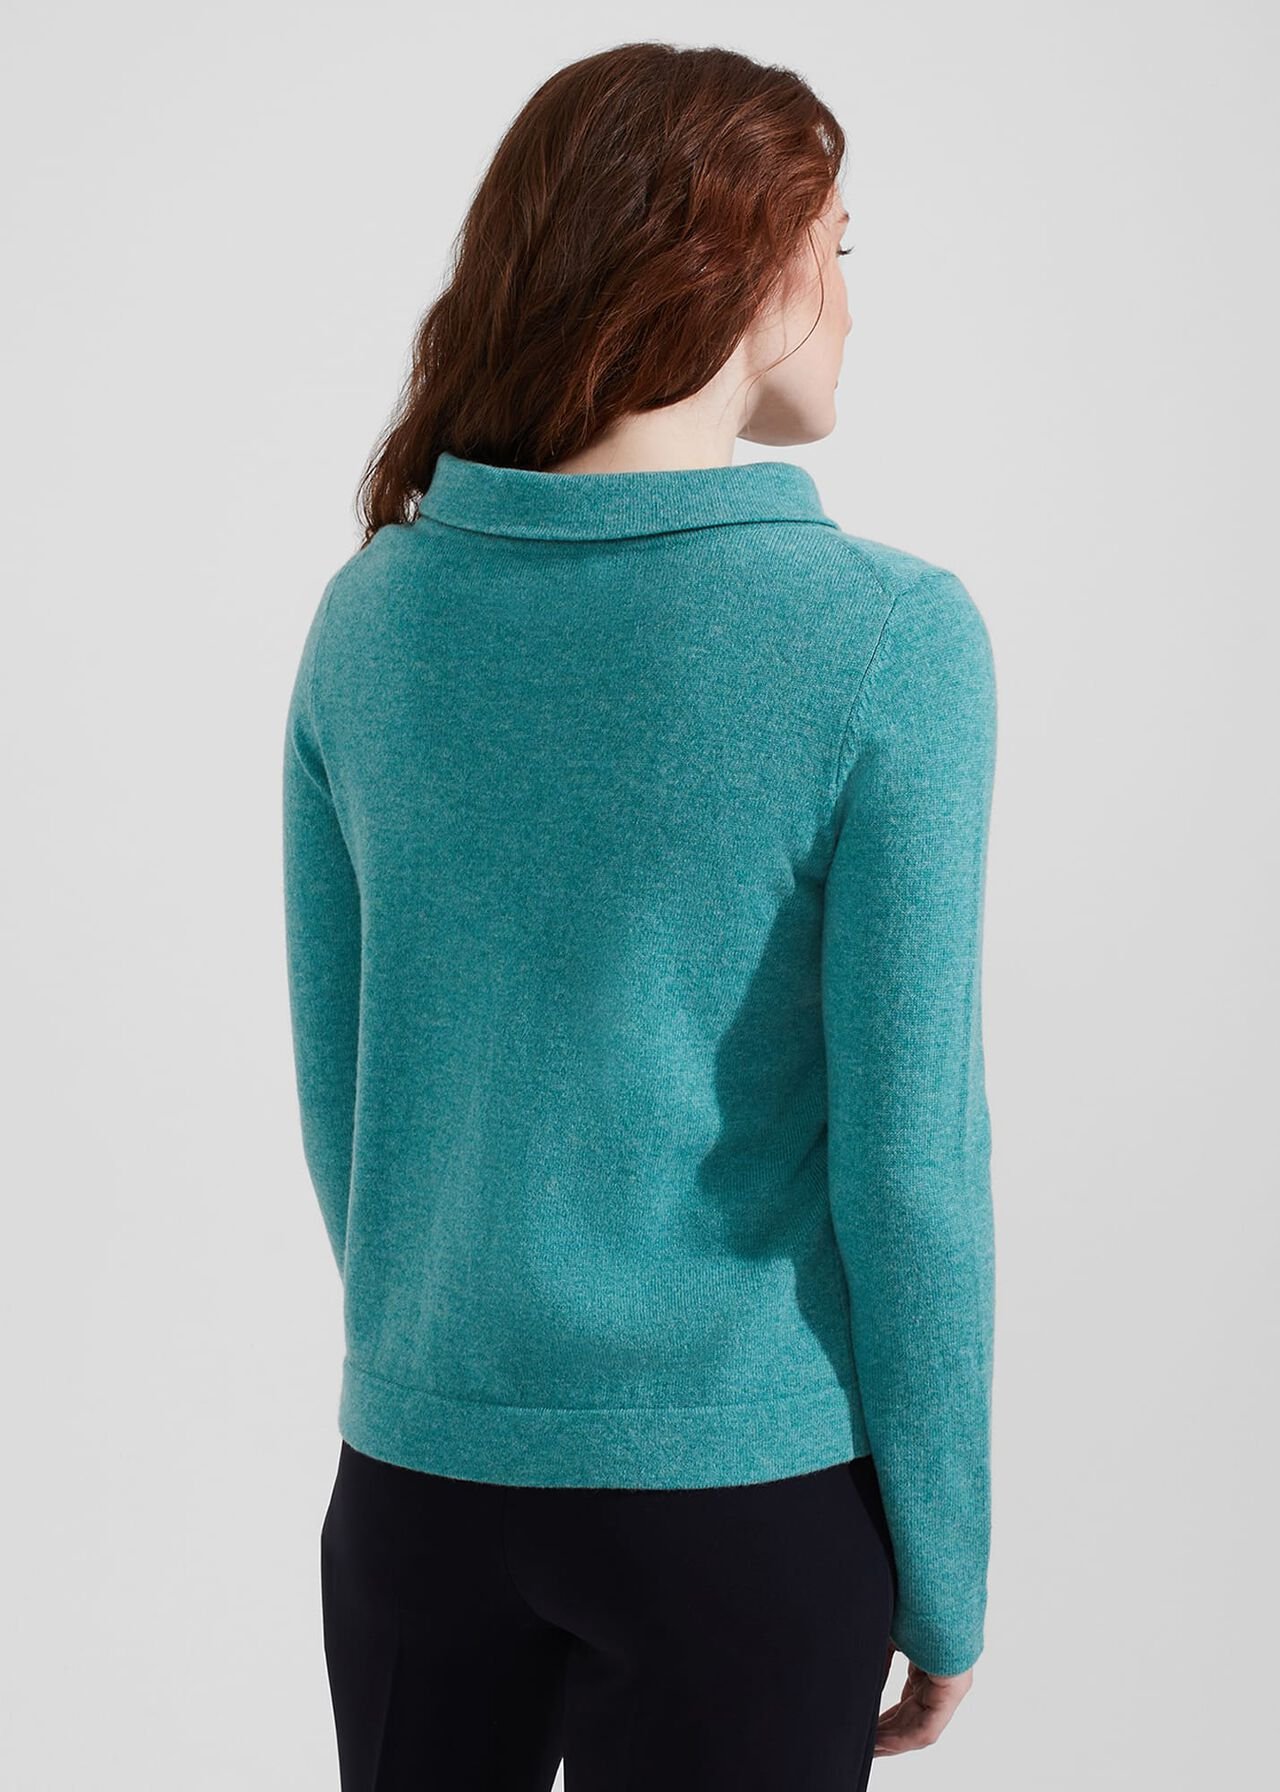 Audrey Wool Cashmere Sweater, Aqua, hi-res